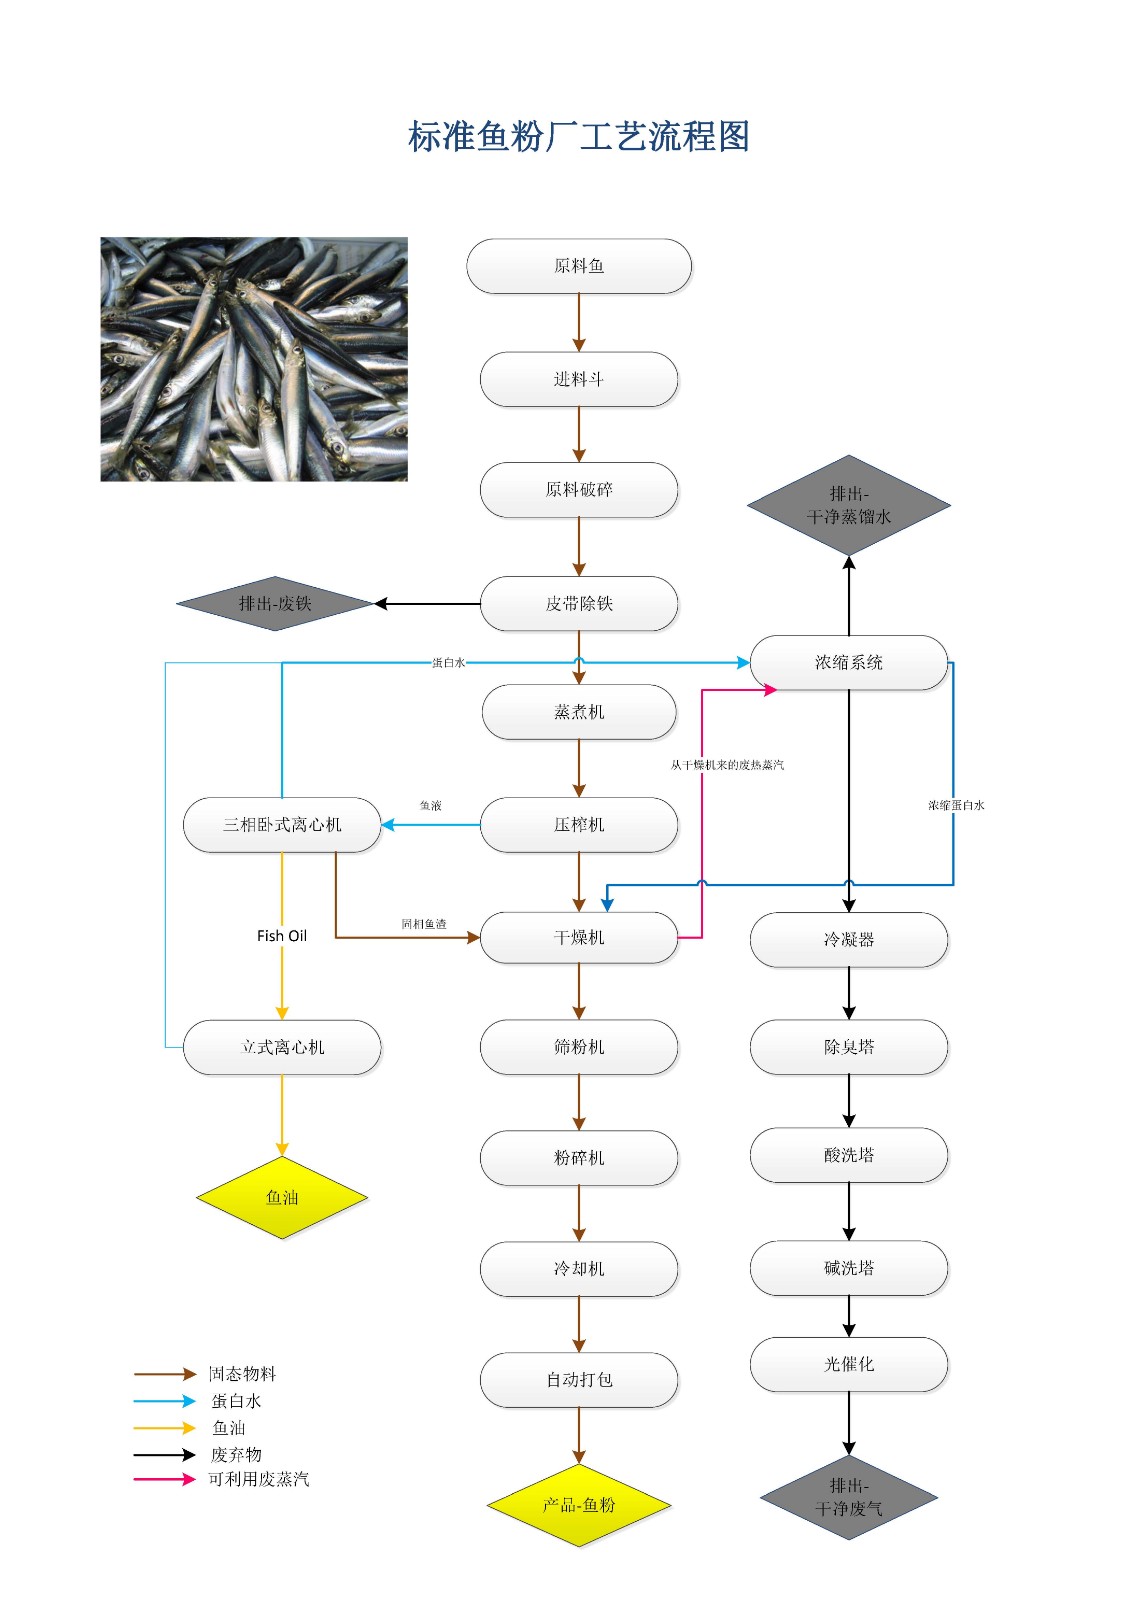 新舟濕法魚粉生産工藝流程圖